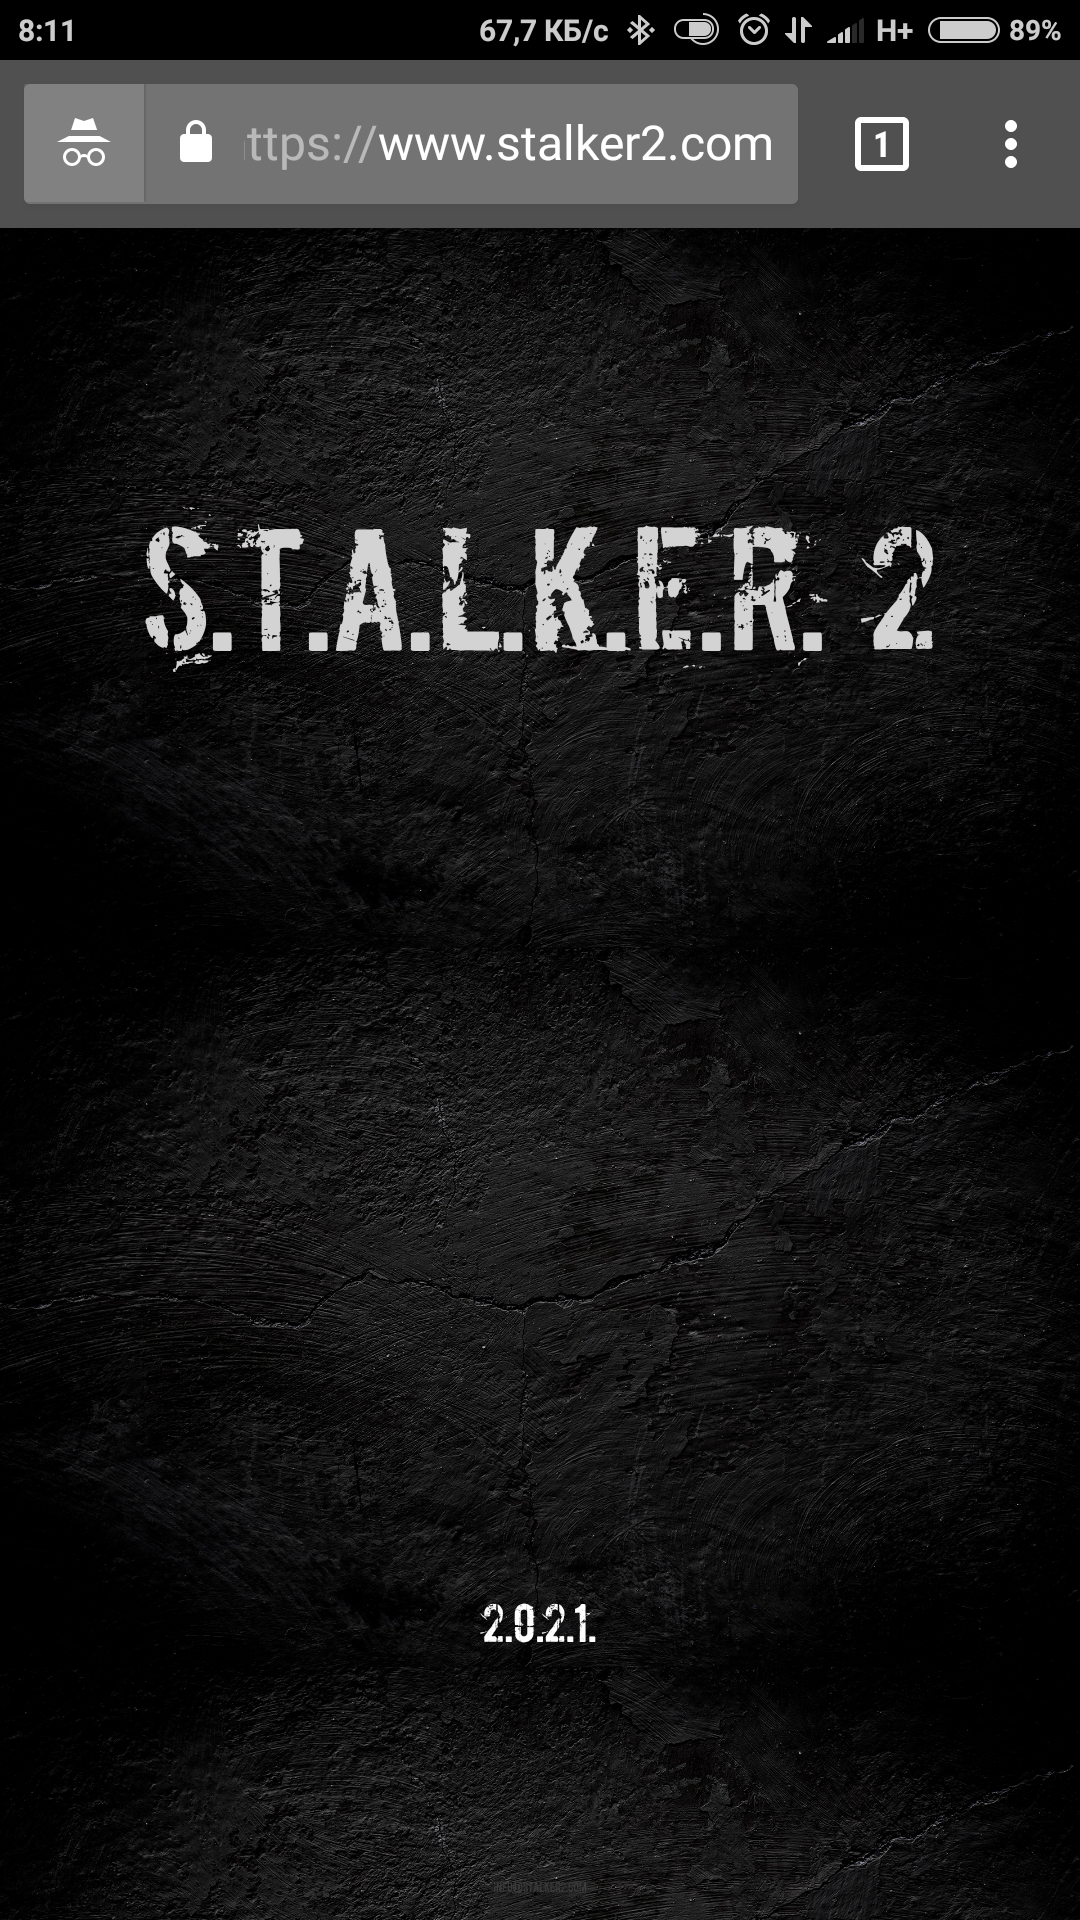 STALKER is alive? - Stalker, 2021, Longpost